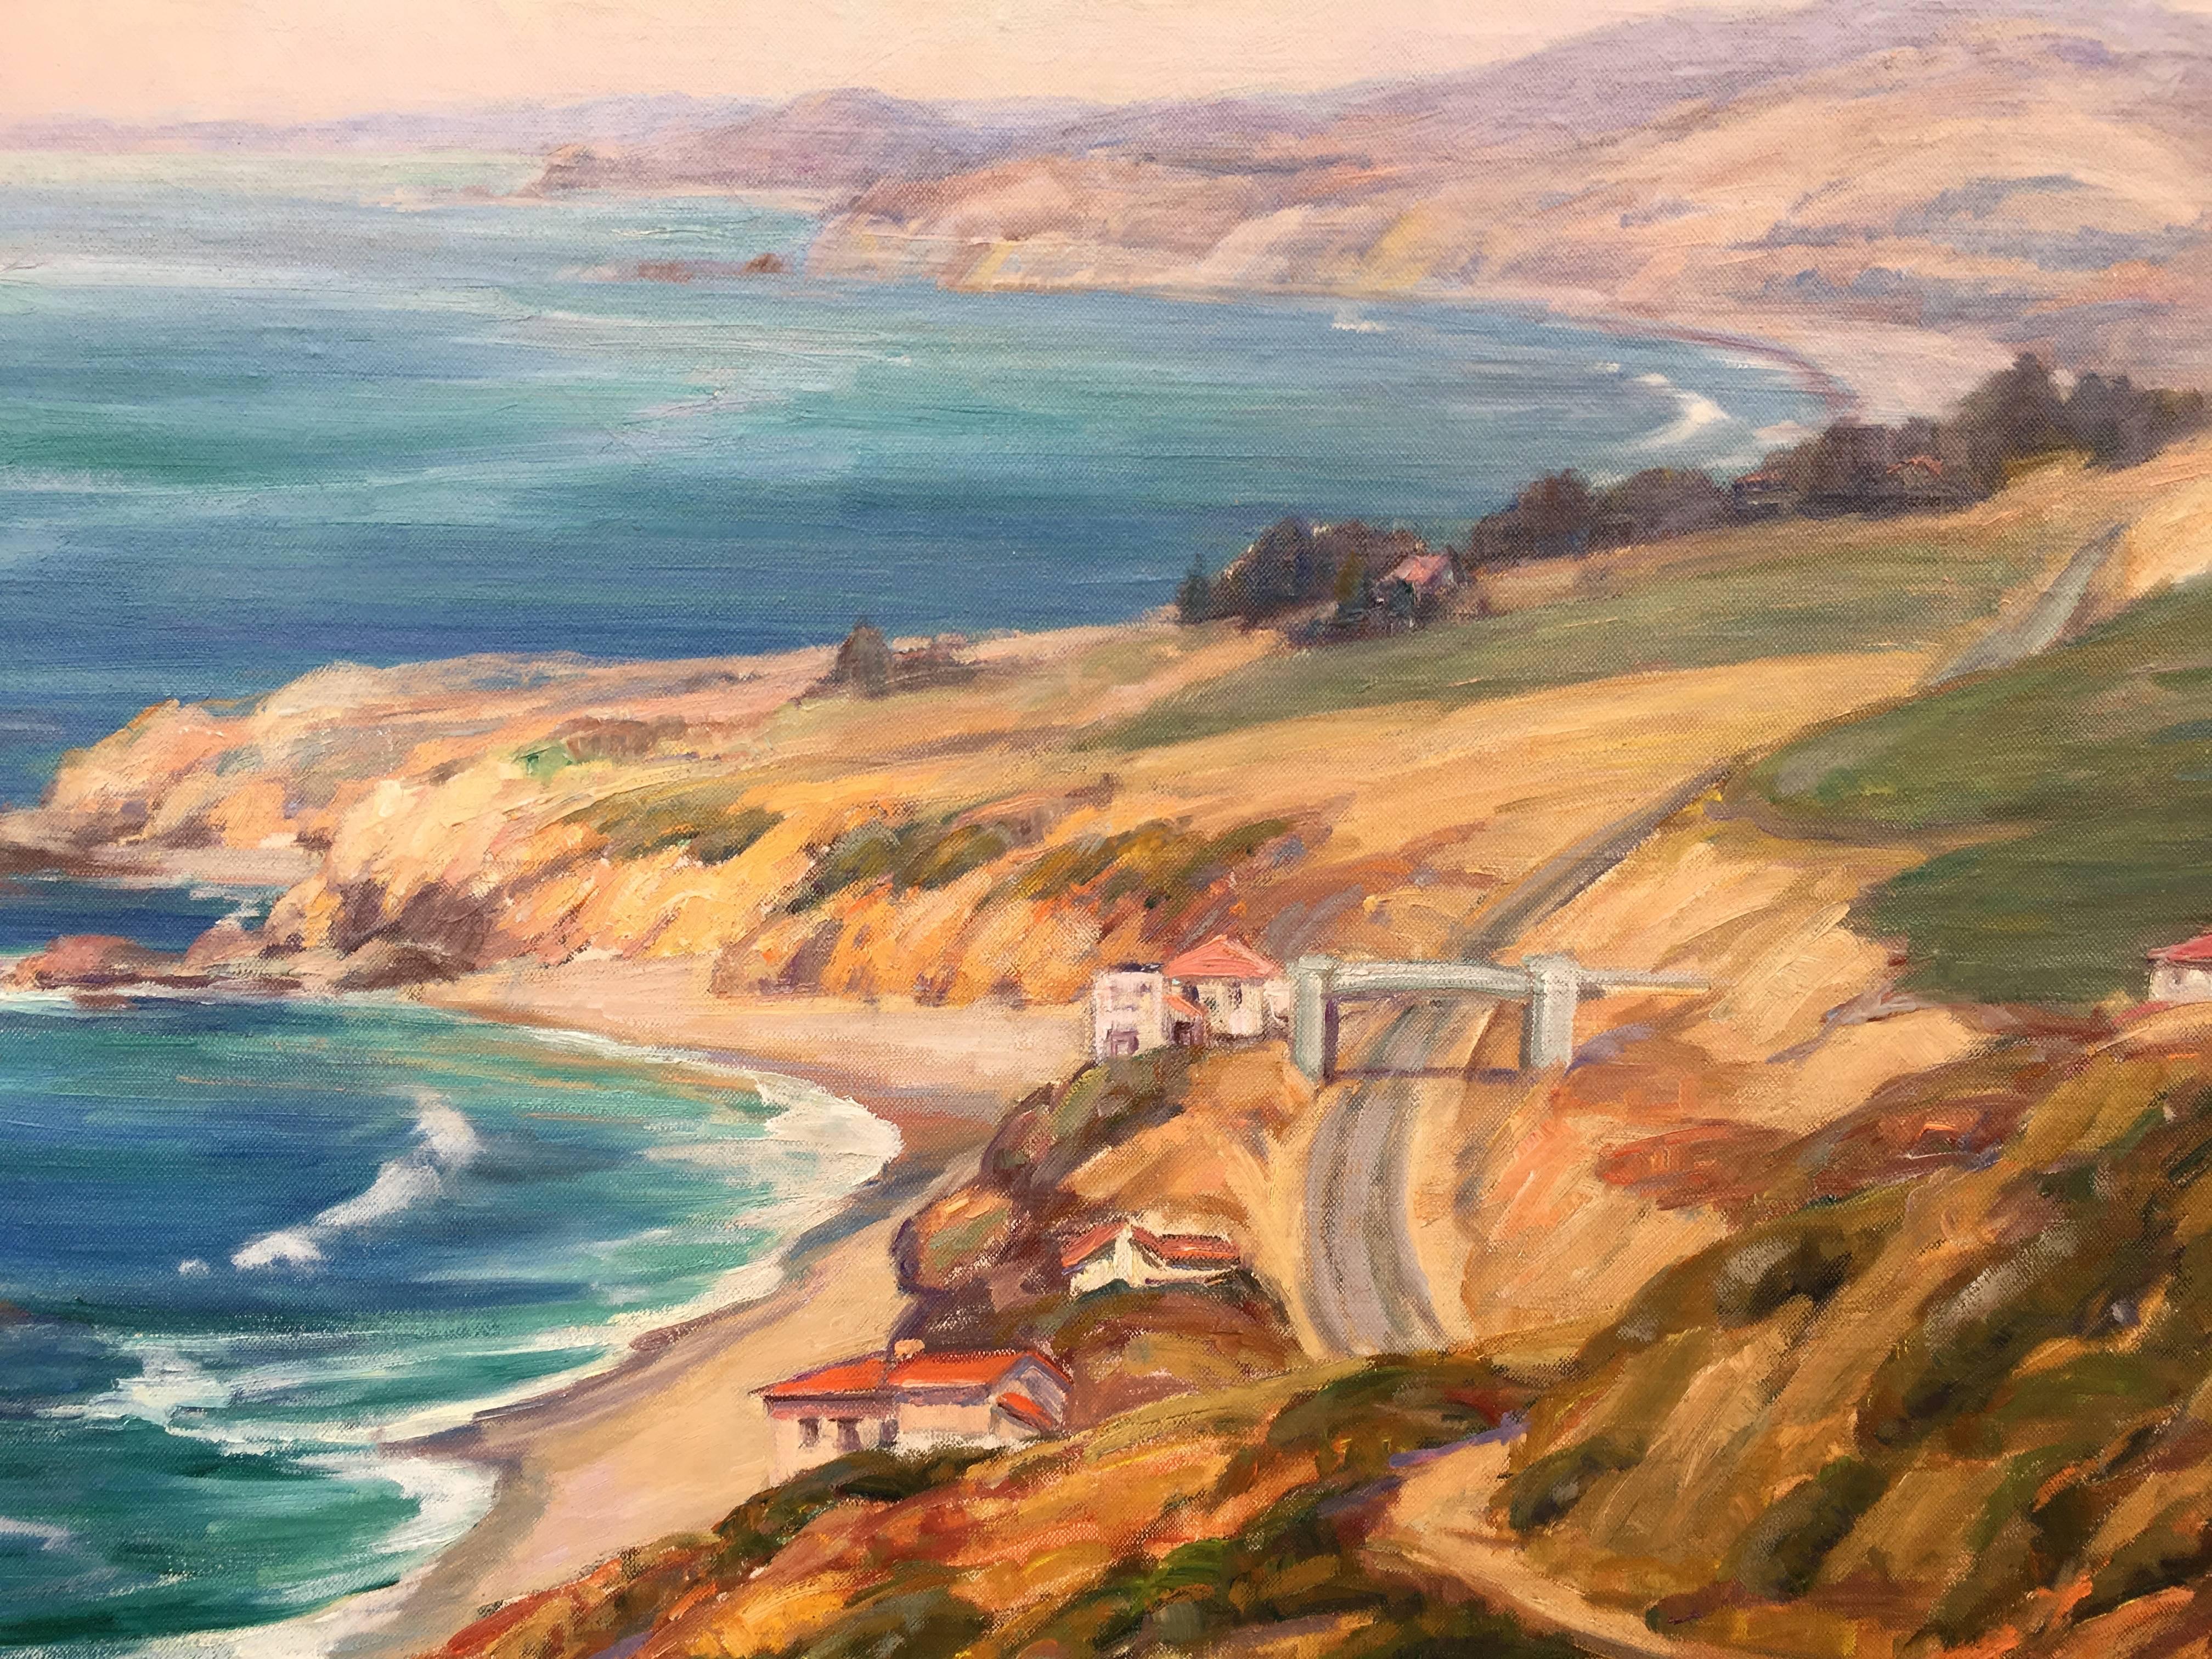 California Coastline - Painting by Evylyna Nunn Miller